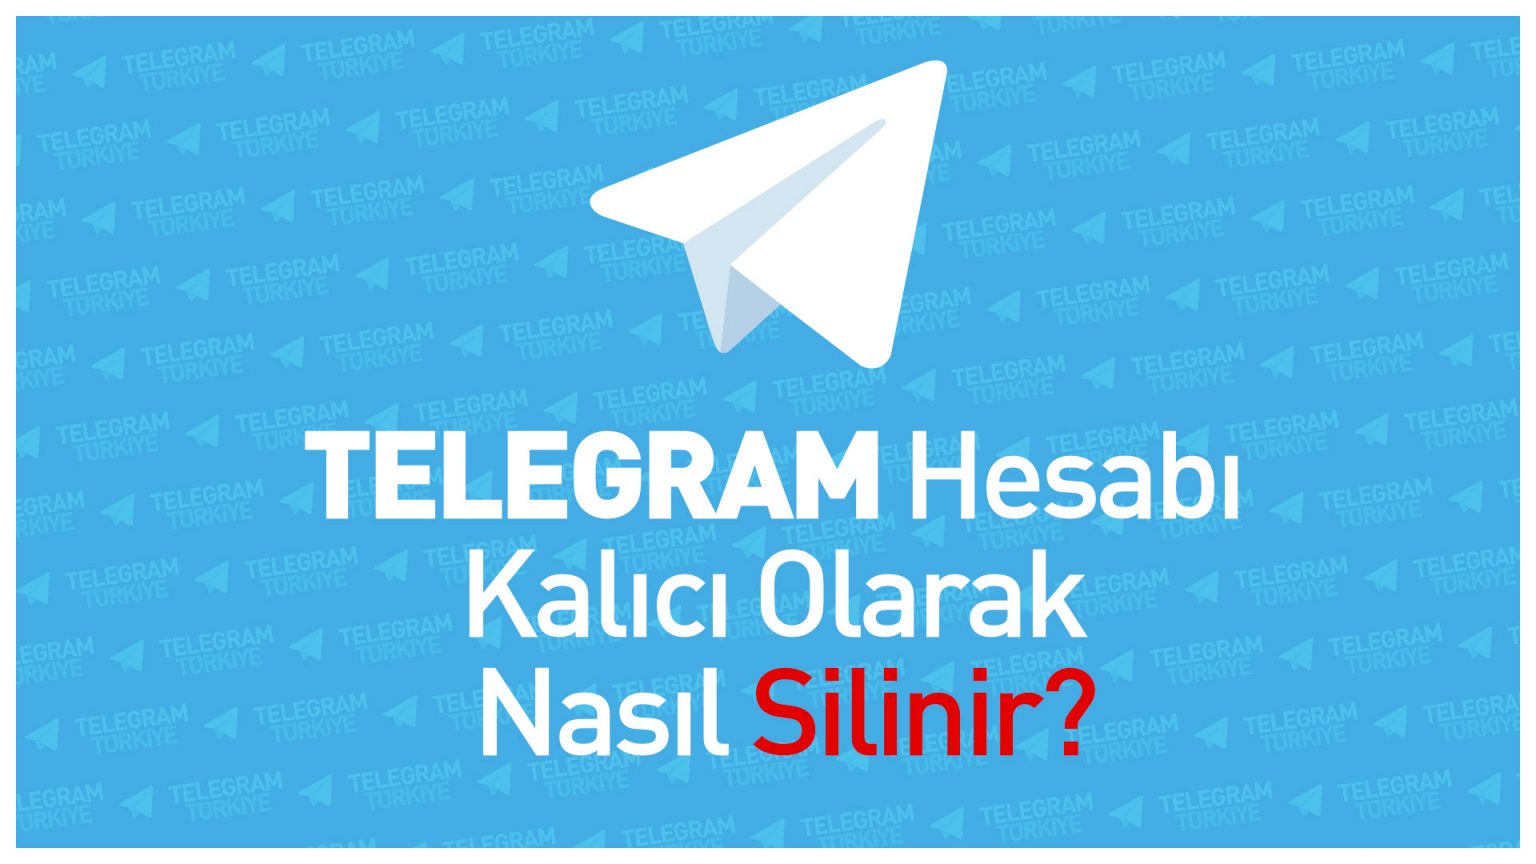 Telegram Hesabı Kalıcı Olarak Nasıl Silinir? Telegram Türkiye